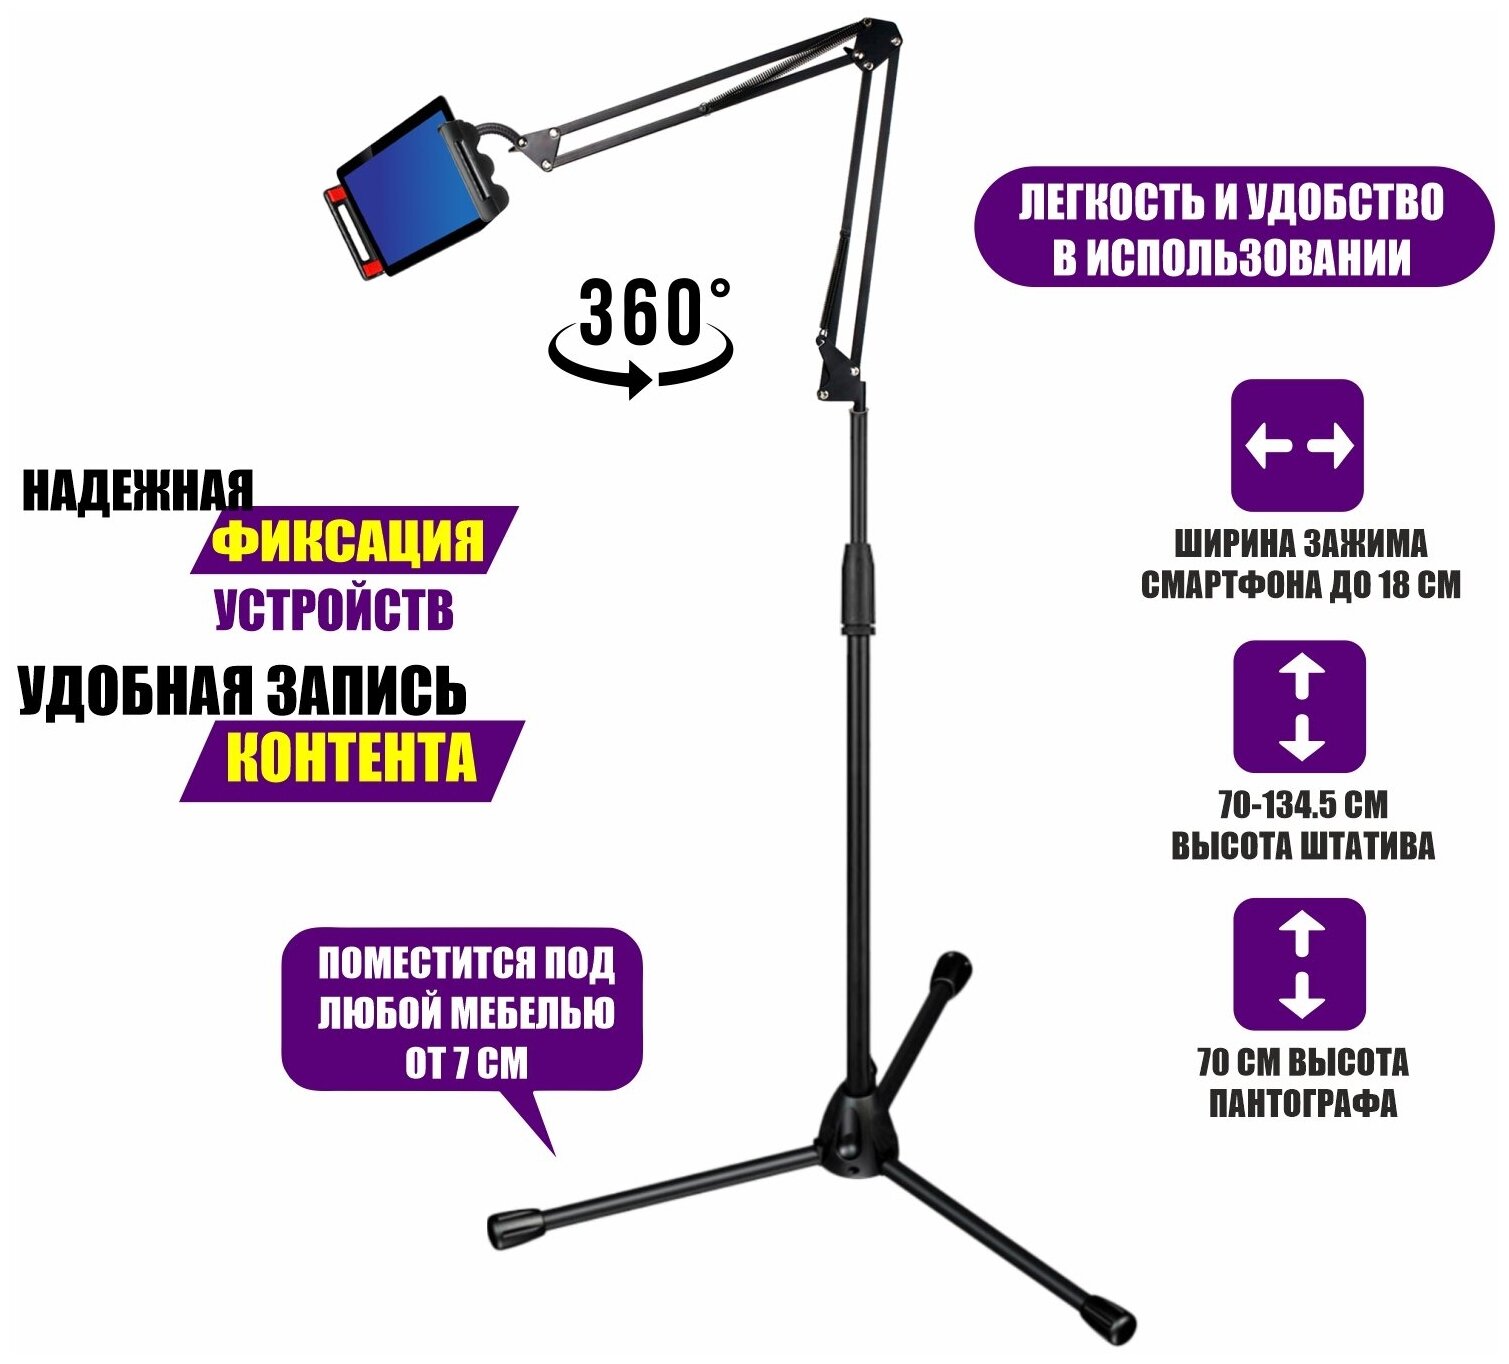 Напольная стойка пантограф JBH-G29 с держателем для телефона или планшета до 18 см